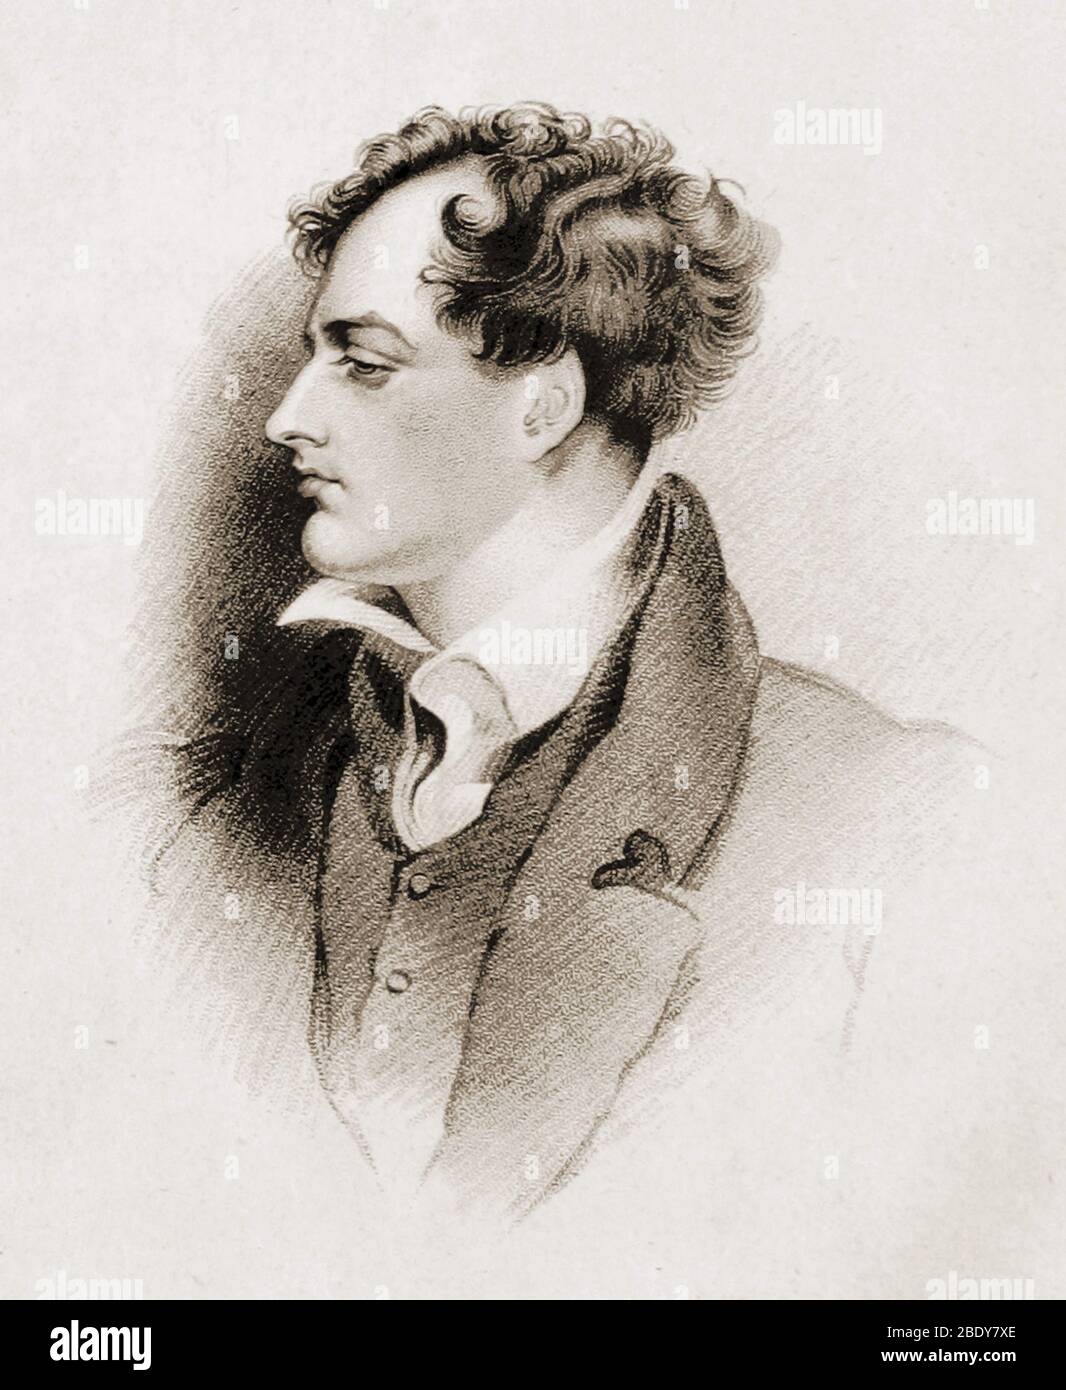 Lord Byron, el poeta romántico inglés Foto de stock